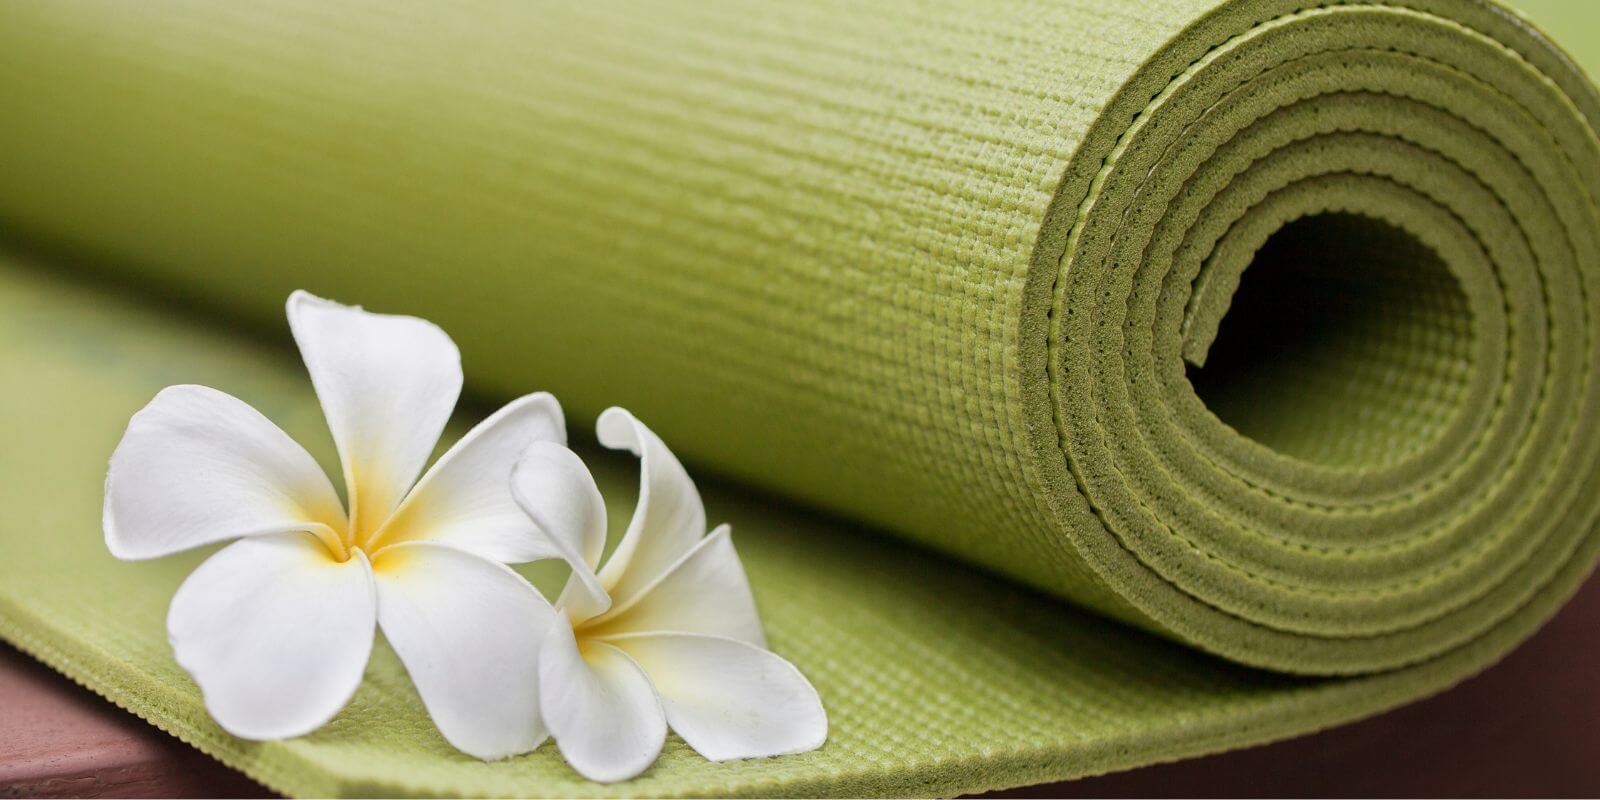 10 Meaningful Ways to Celebrate International Yoga Day